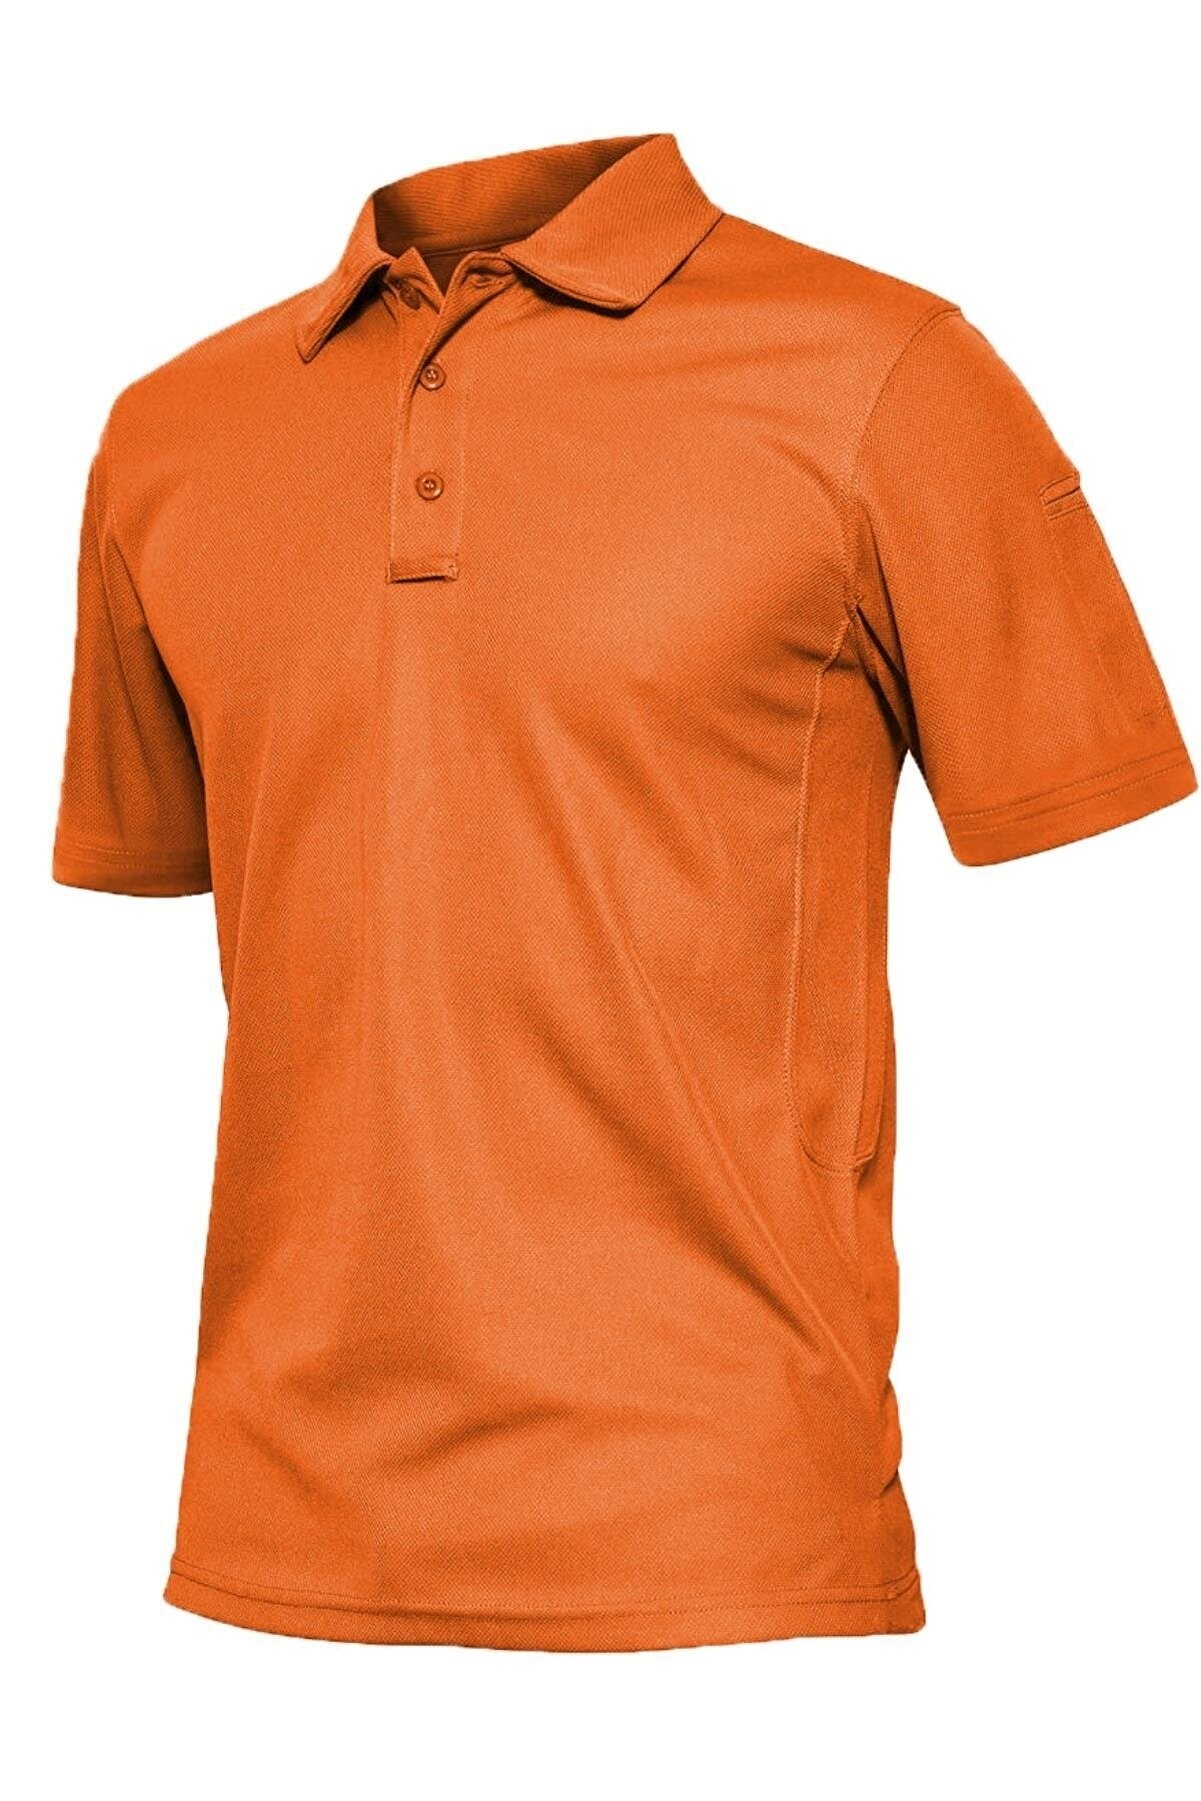 Ghassy Co. Erkek Taktik Polo Yaka Gömlek Hızlı Kuruma Nem Emici Performans Pique Jersey Golf T-shirt - TURUNCU